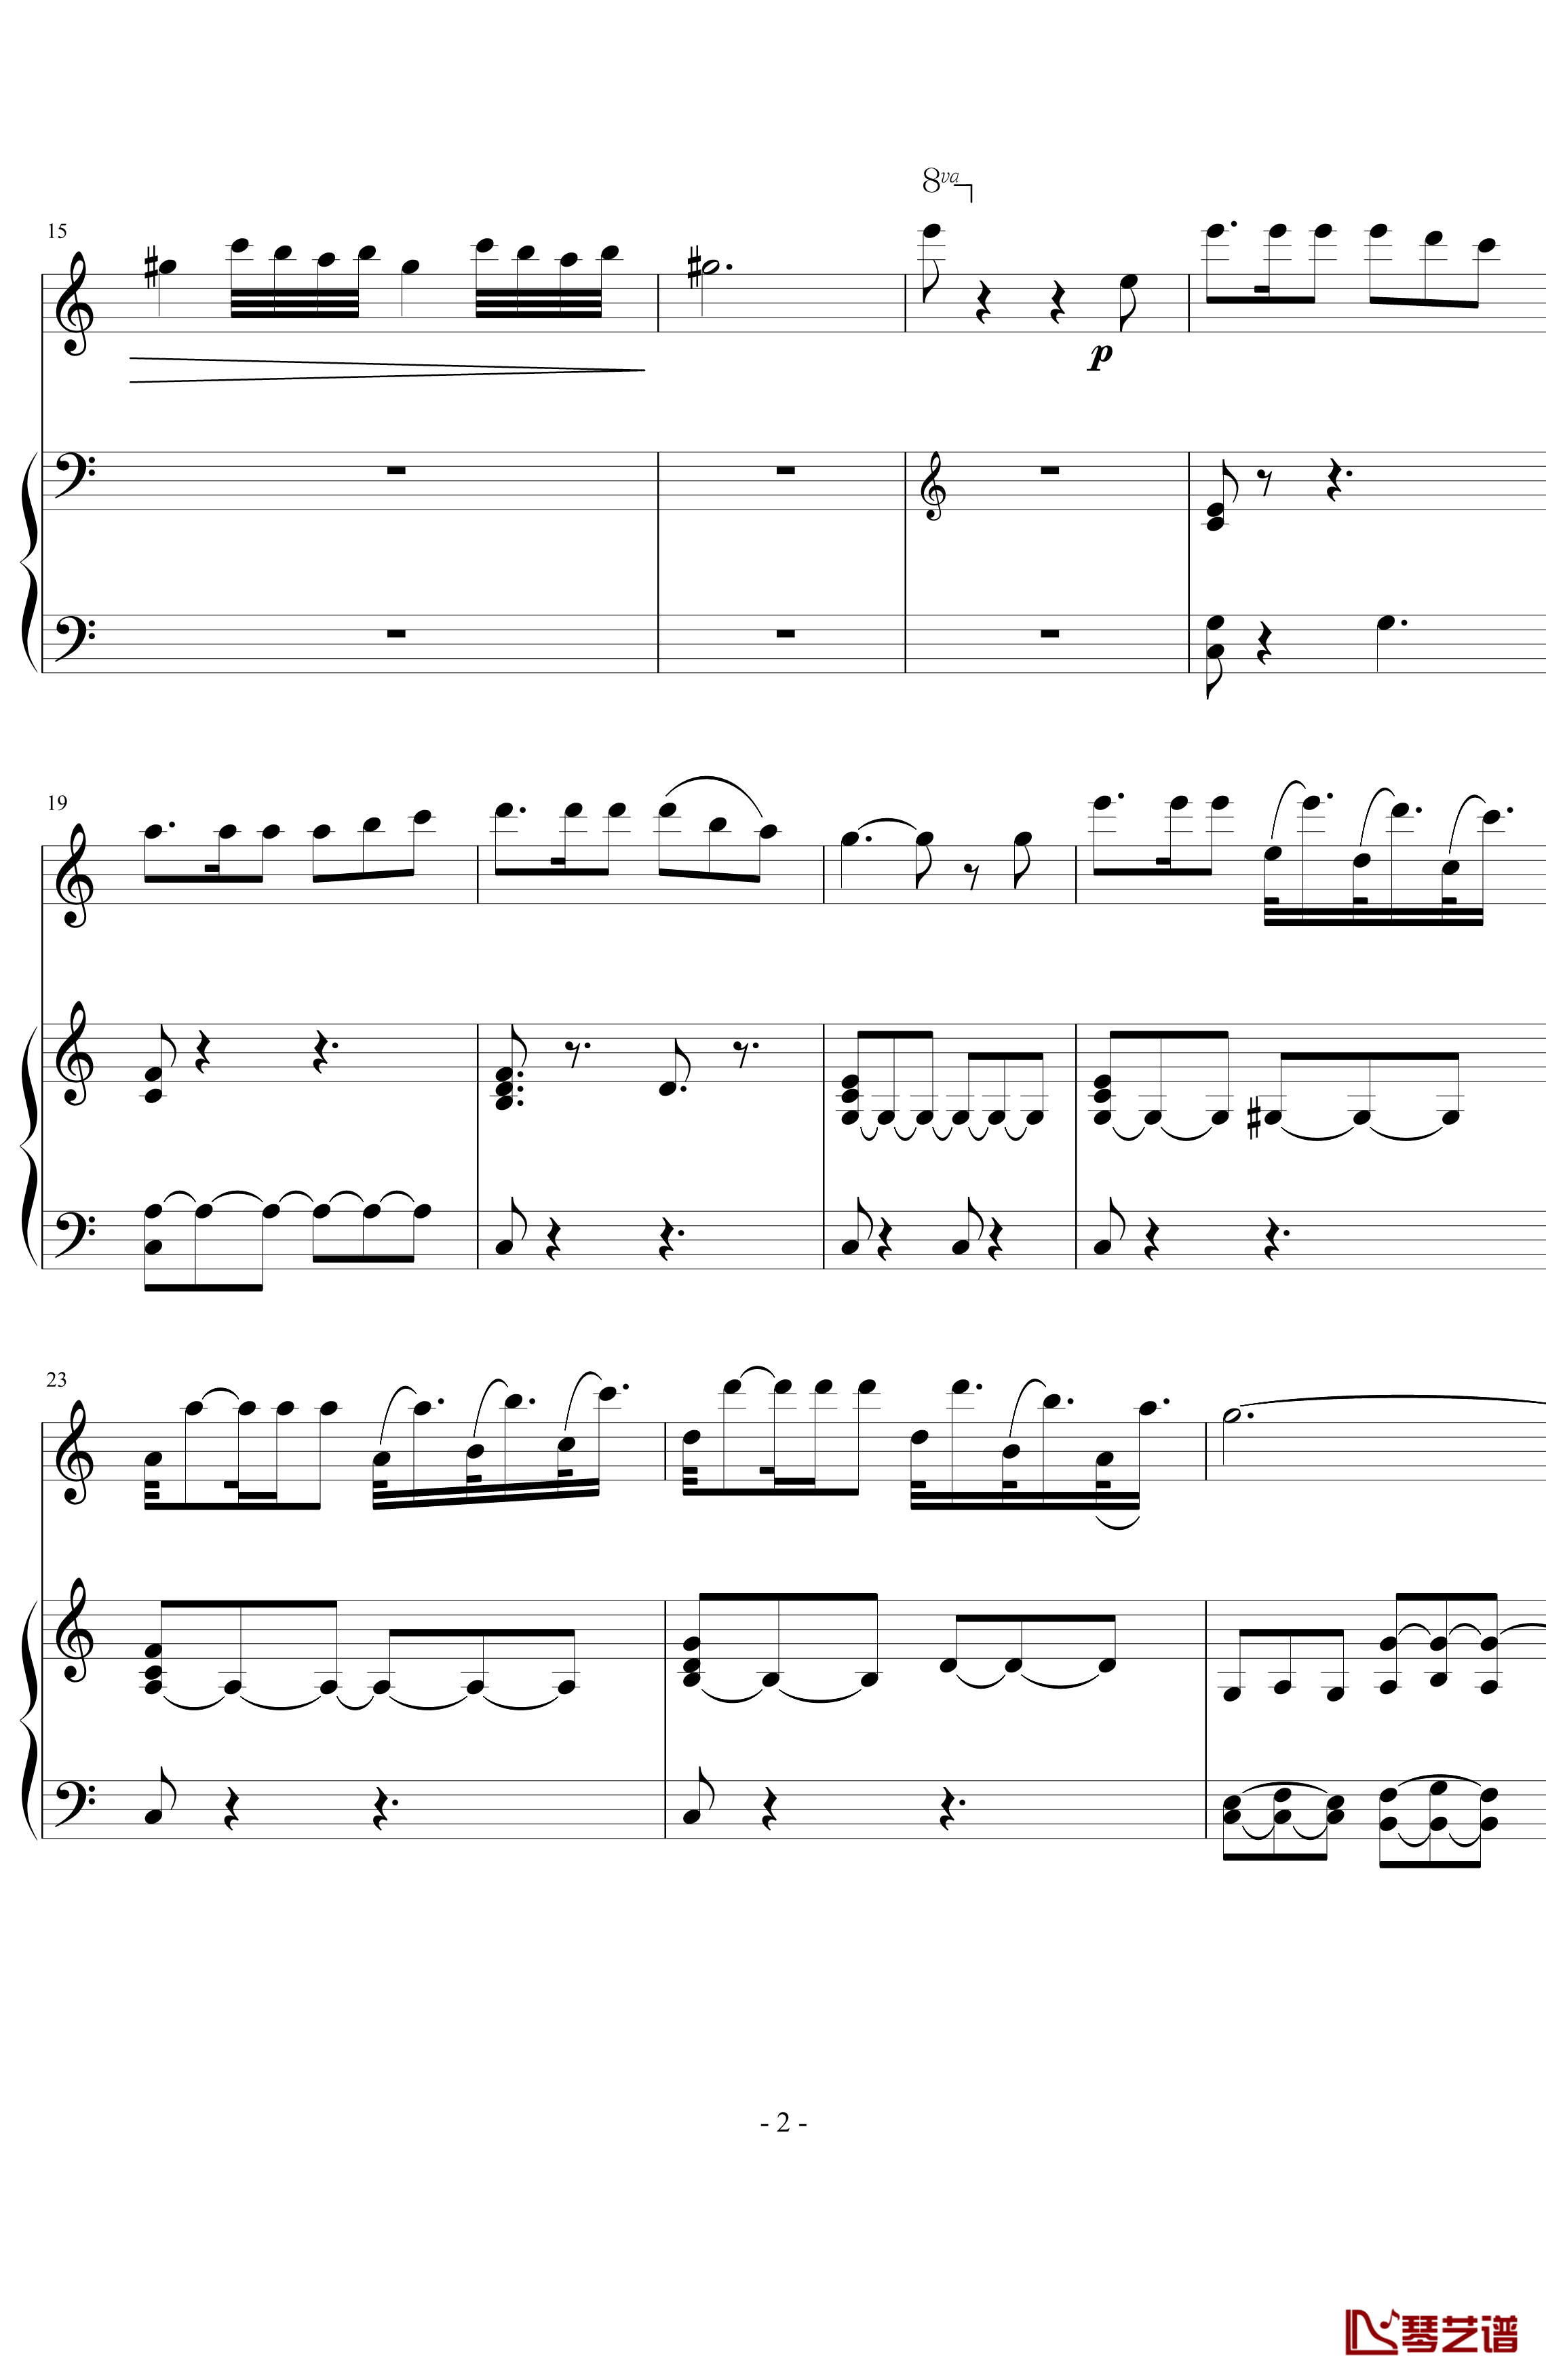 卡门主题幻想曲钢琴谱-慢板部分-萨拉萨蒂-Sarasate2